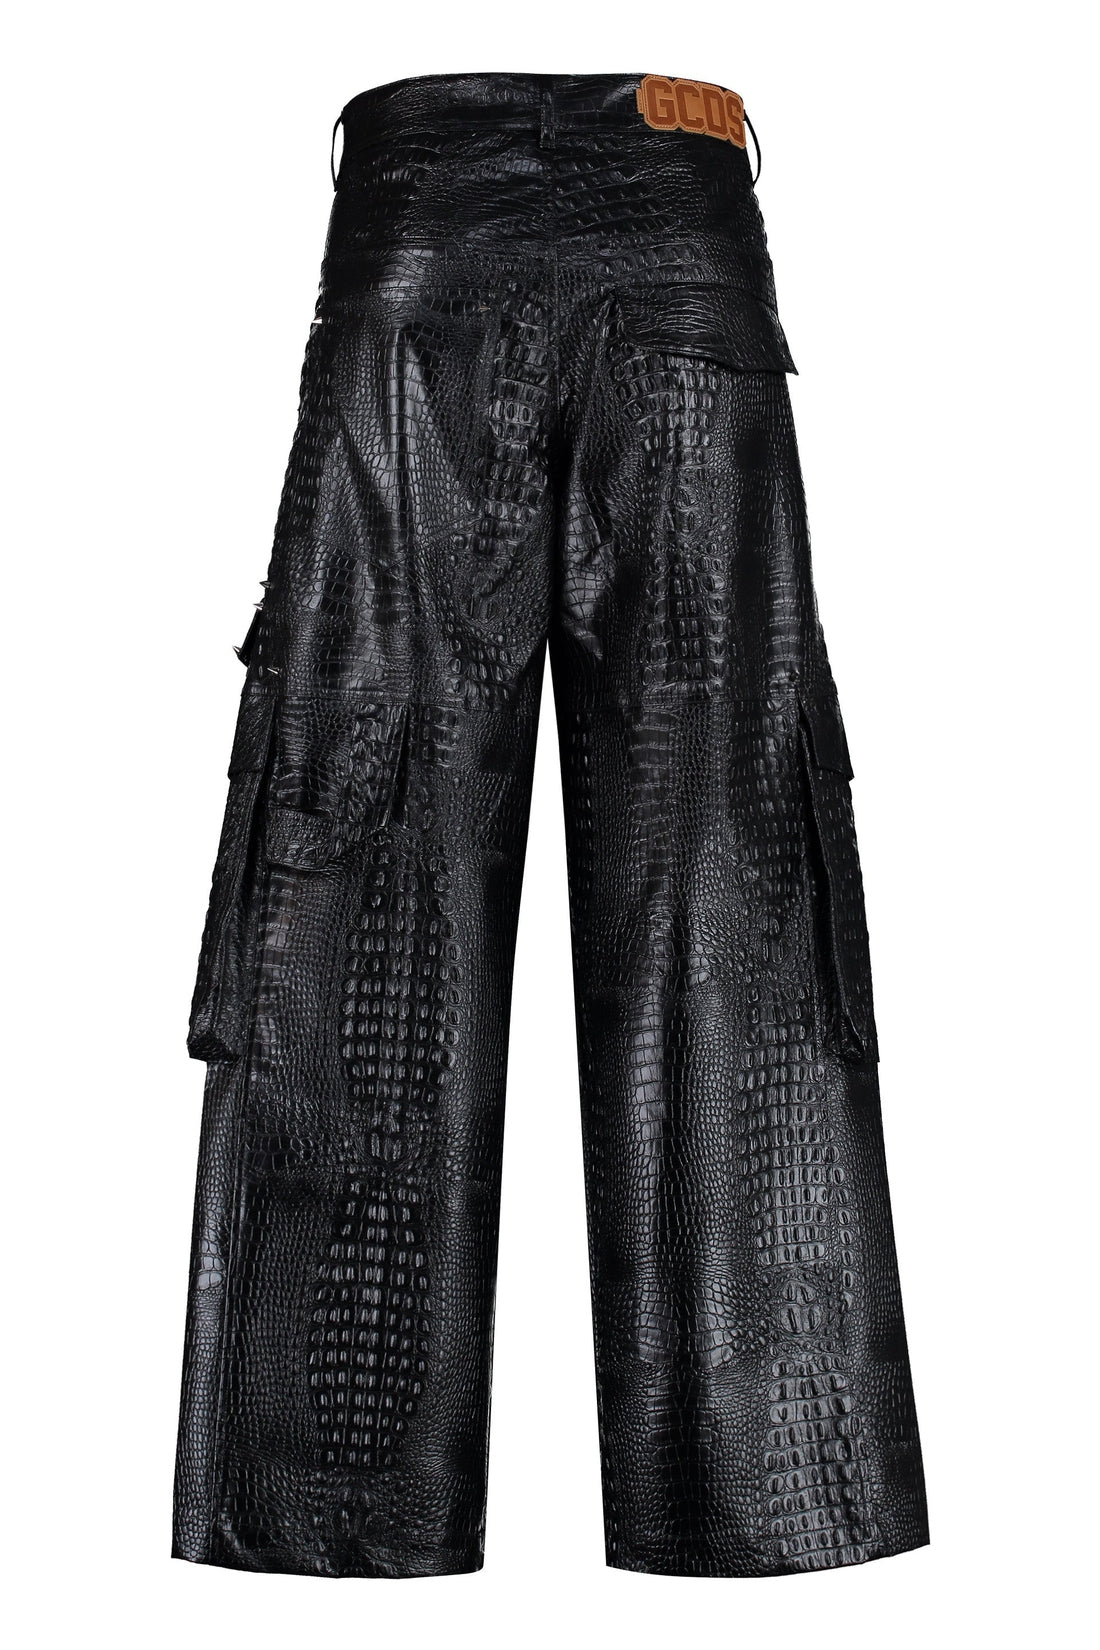 GCDS-OUTLET-SALE-Vegan leather trousers-ARCHIVIST